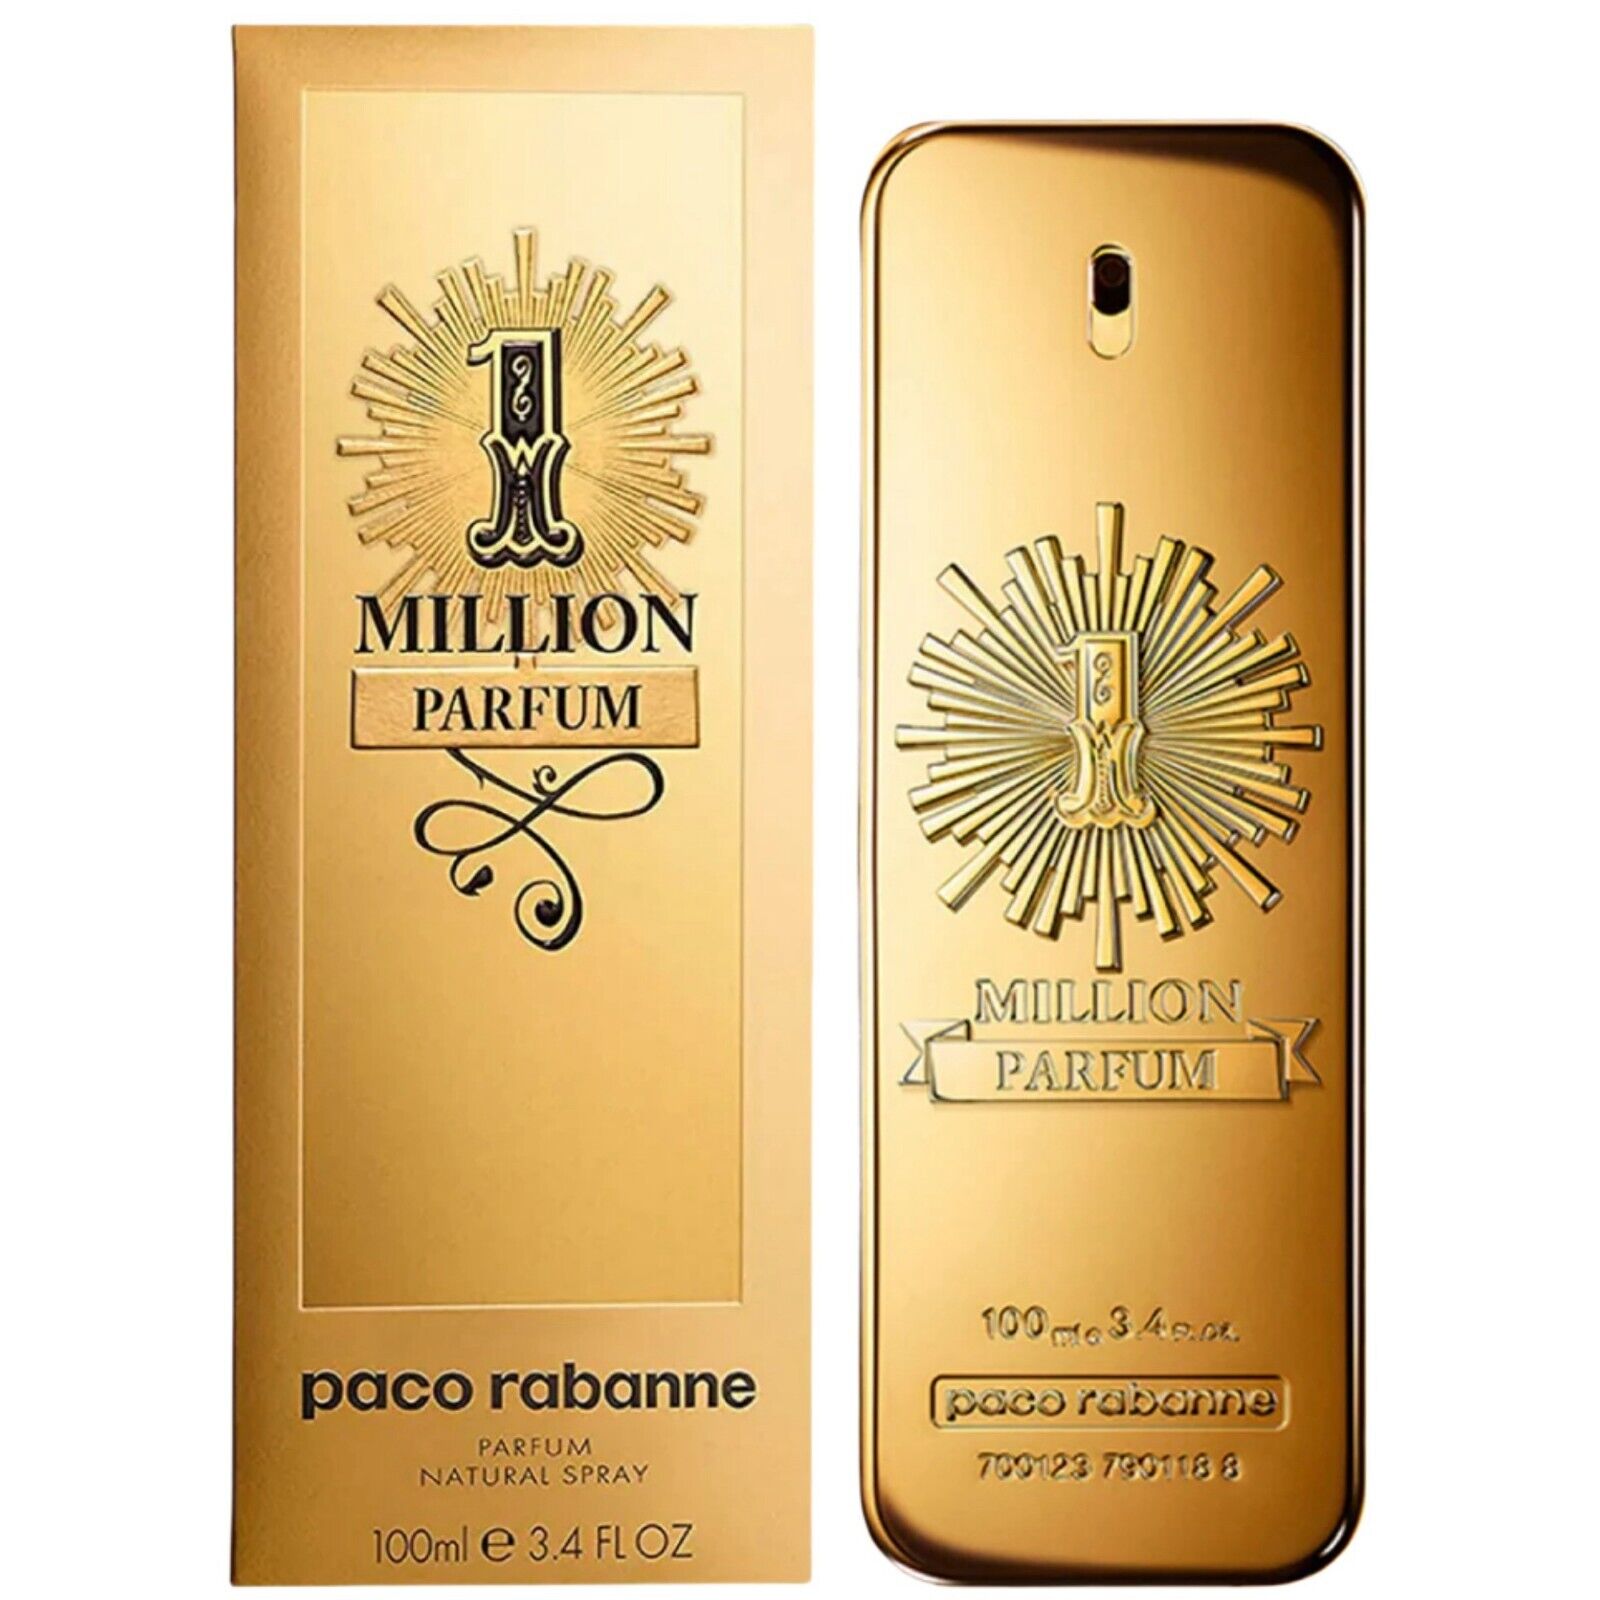 NEW One Million Perfum Páco Rábánne Cologne Parfum Men’s Spray 3.4 Oz 100 ml